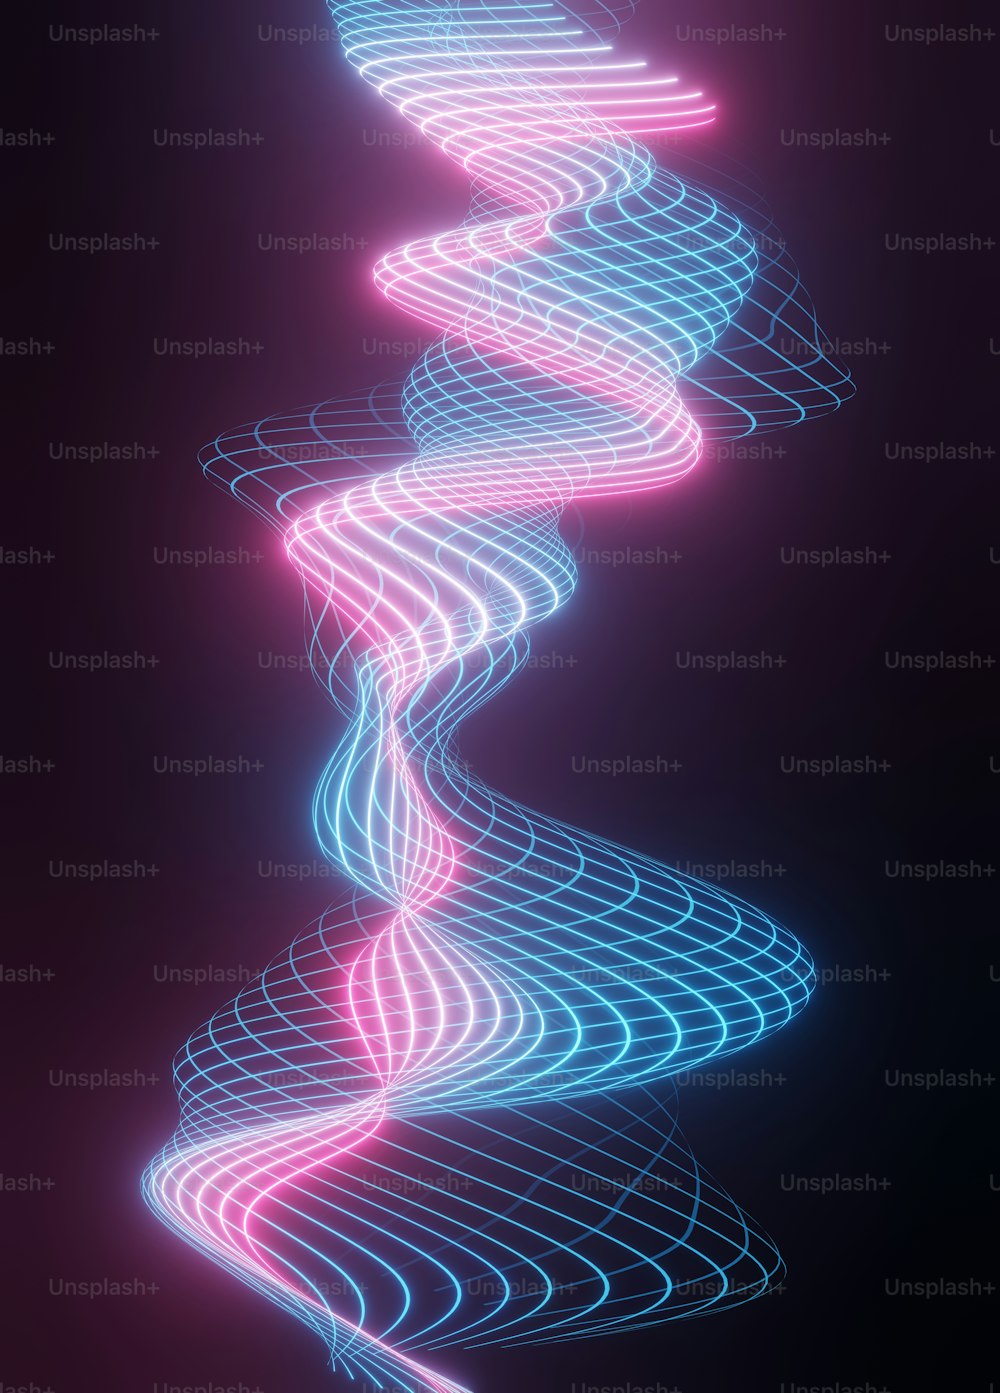 Un'immagine astratta di una spirale di luci al neon